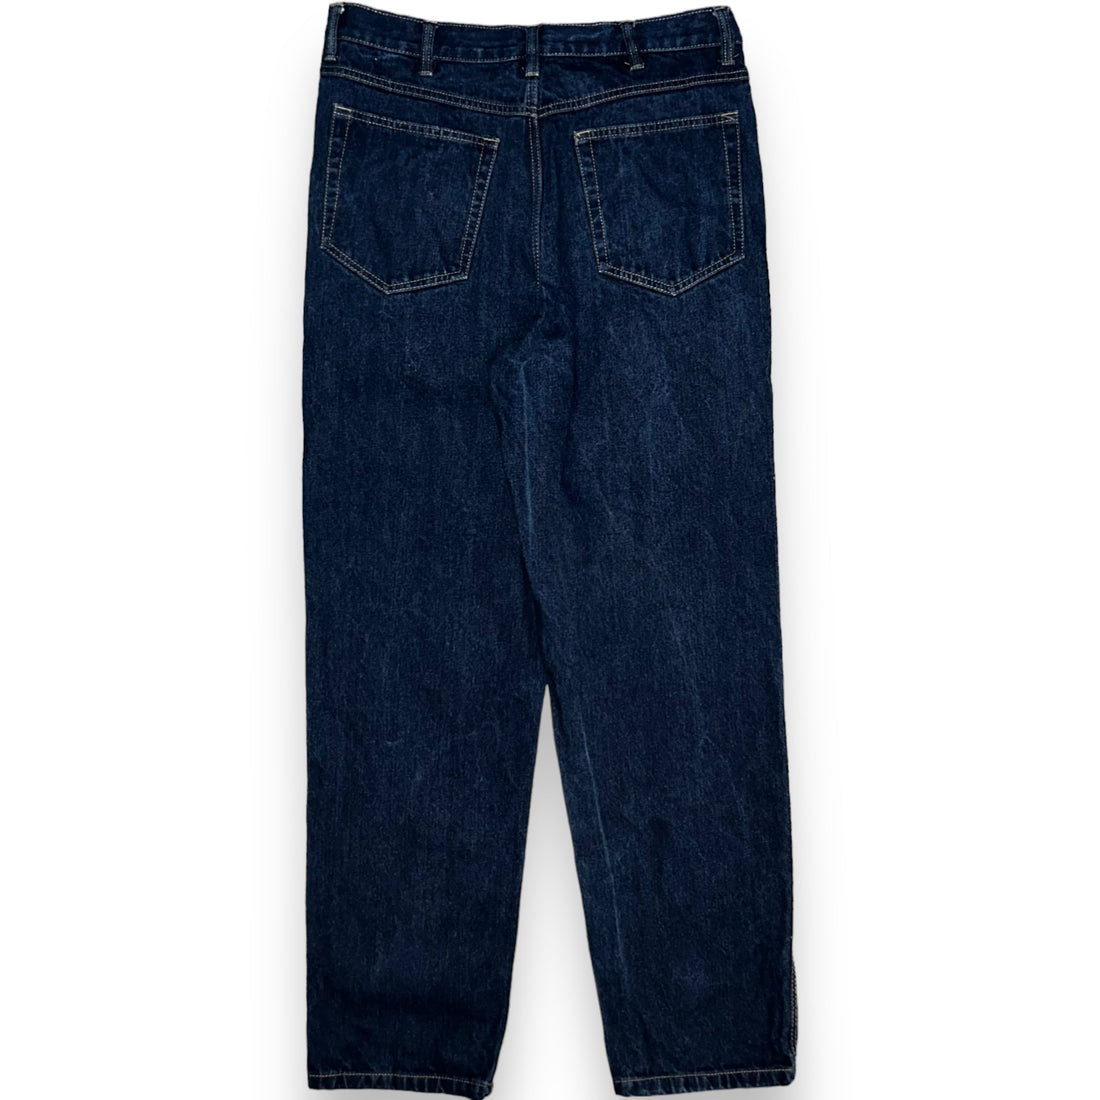 Jeans (36 US XL)